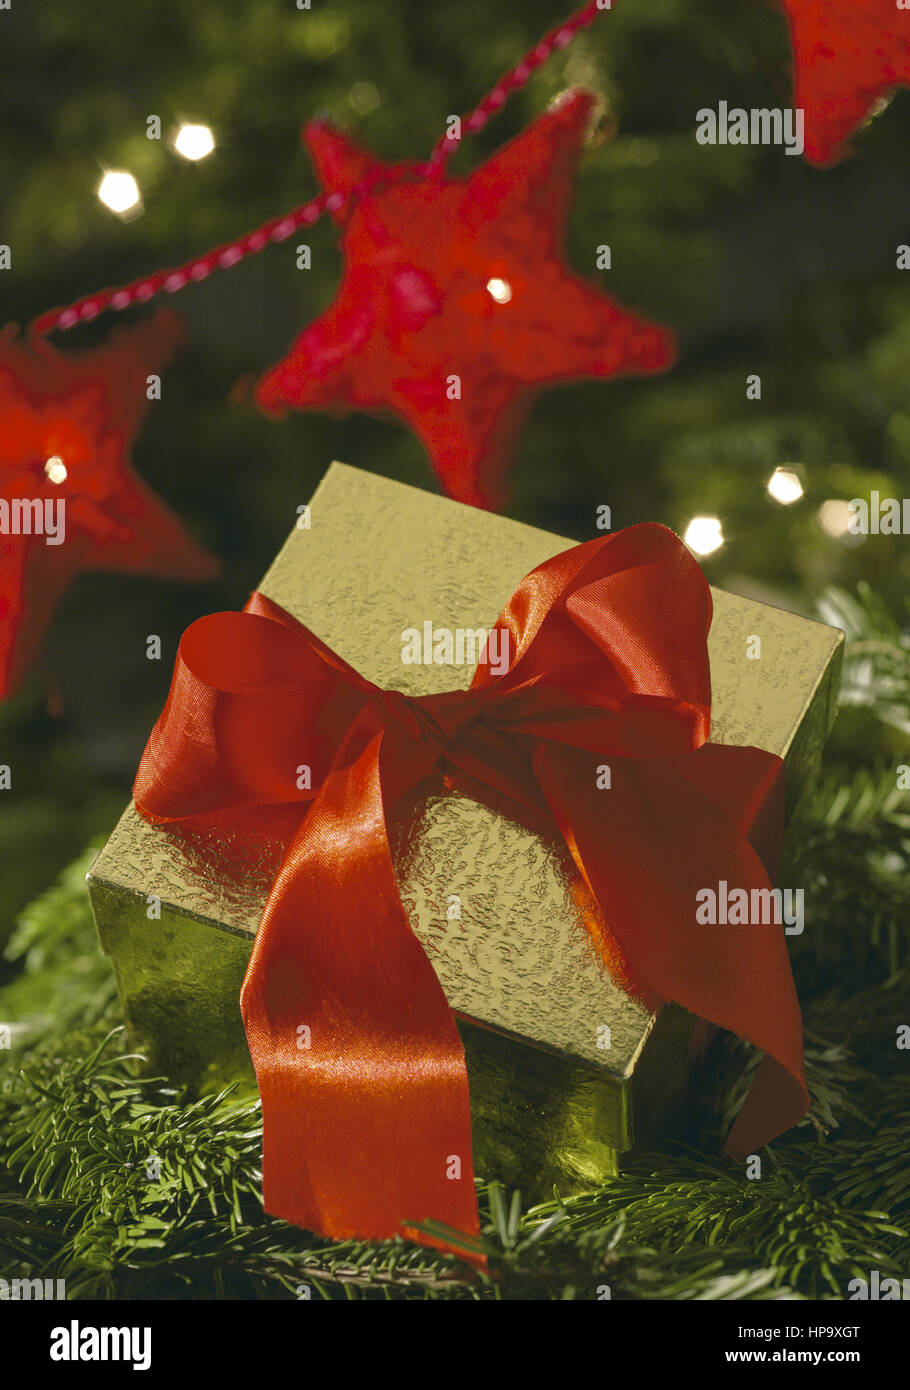 Paeckchen mit roter Schleife, rote Sterne, weihnachtlich Stock Photo